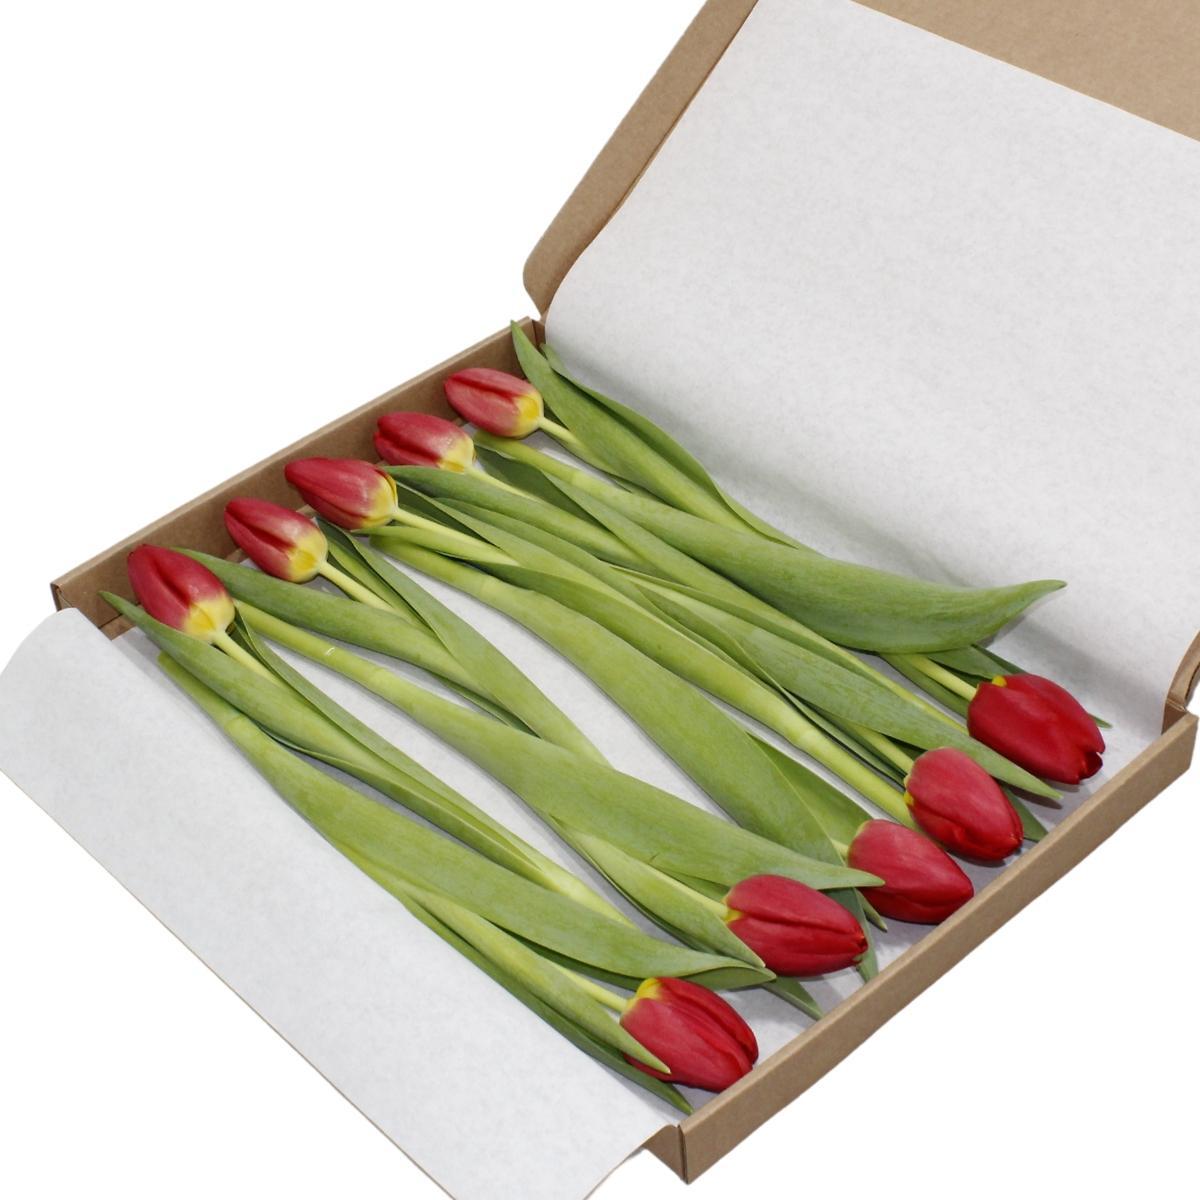 10x | Rode tulpen | Klein boeket